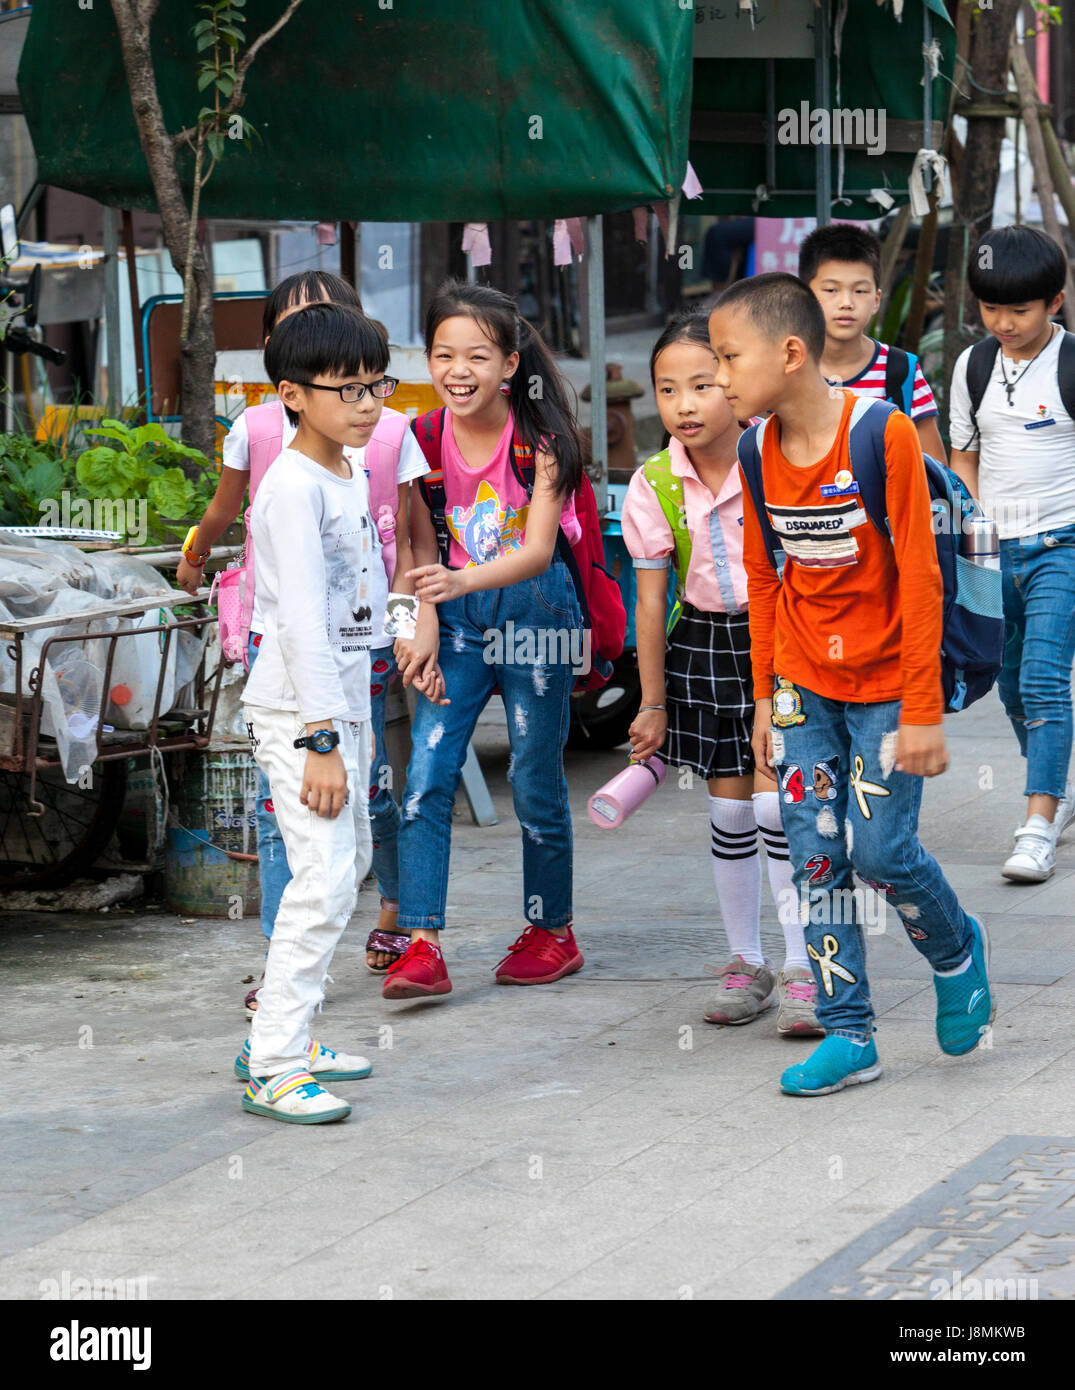 Yantou, Yongjia, Zhejiang, China.  Children Walking Home after School. Stock Photo